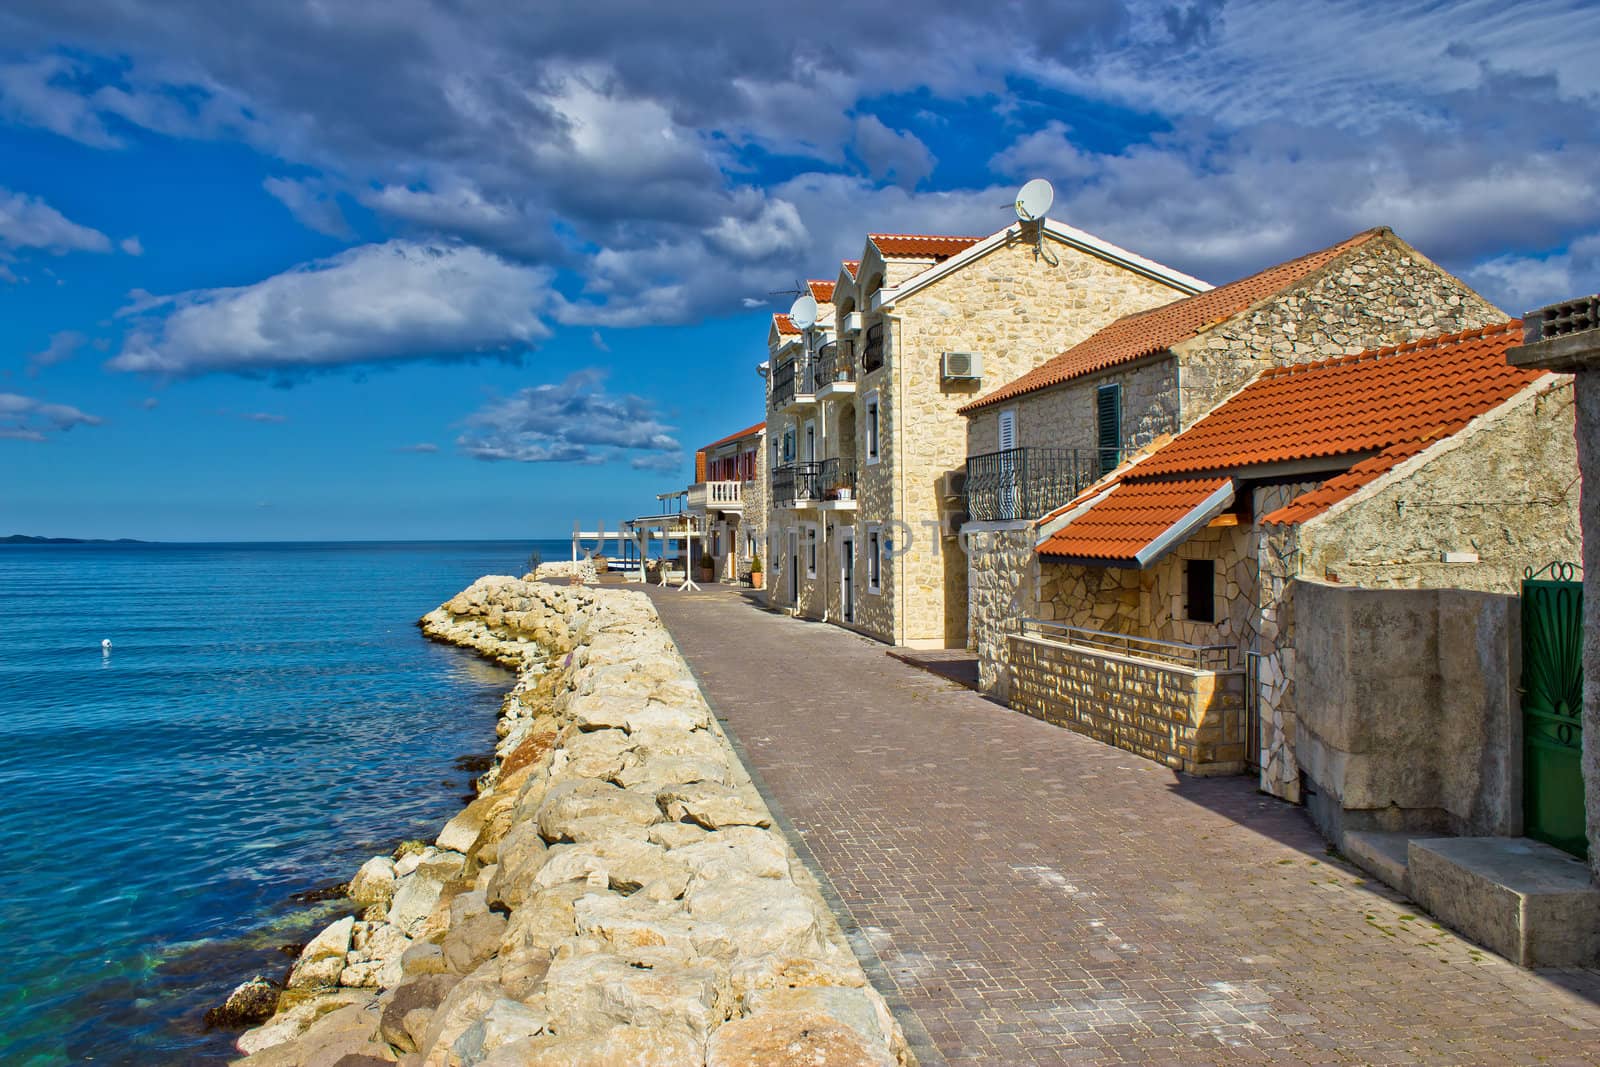 Adriatic coast - Dalmatian town of Bibinje waterfront by xbrchx